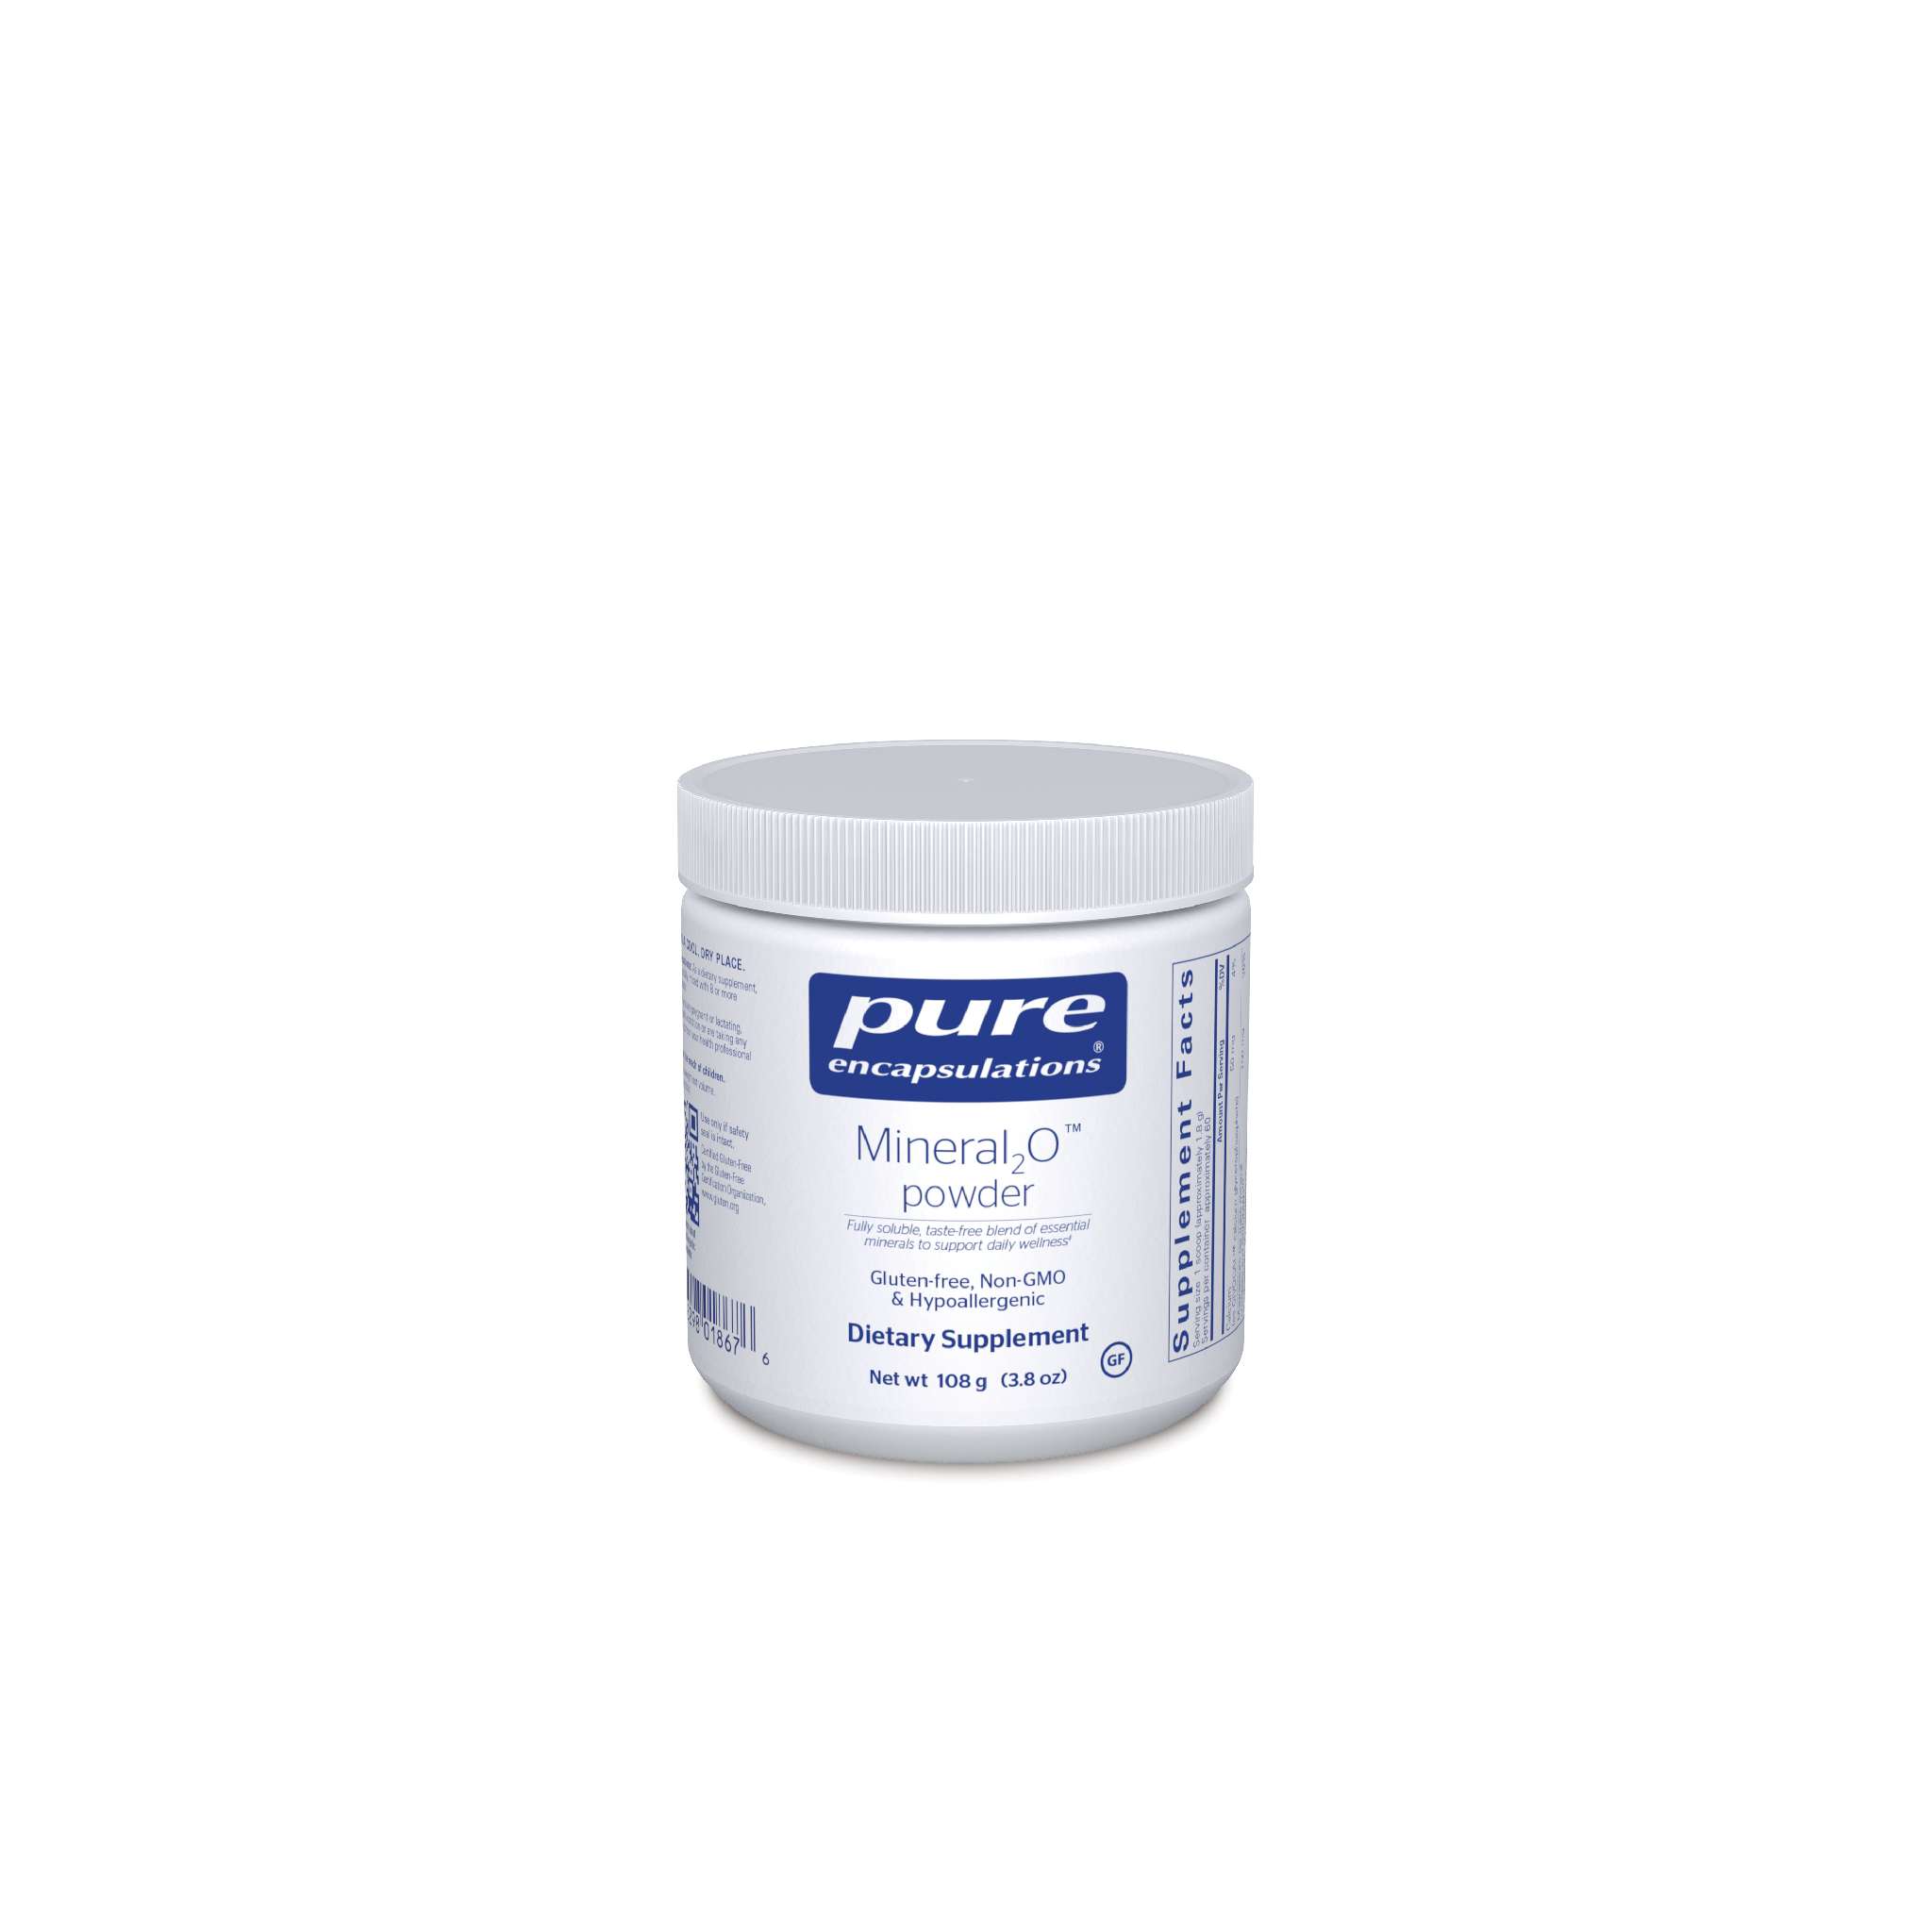 Pure Encapsulations - Mineral2 O powder